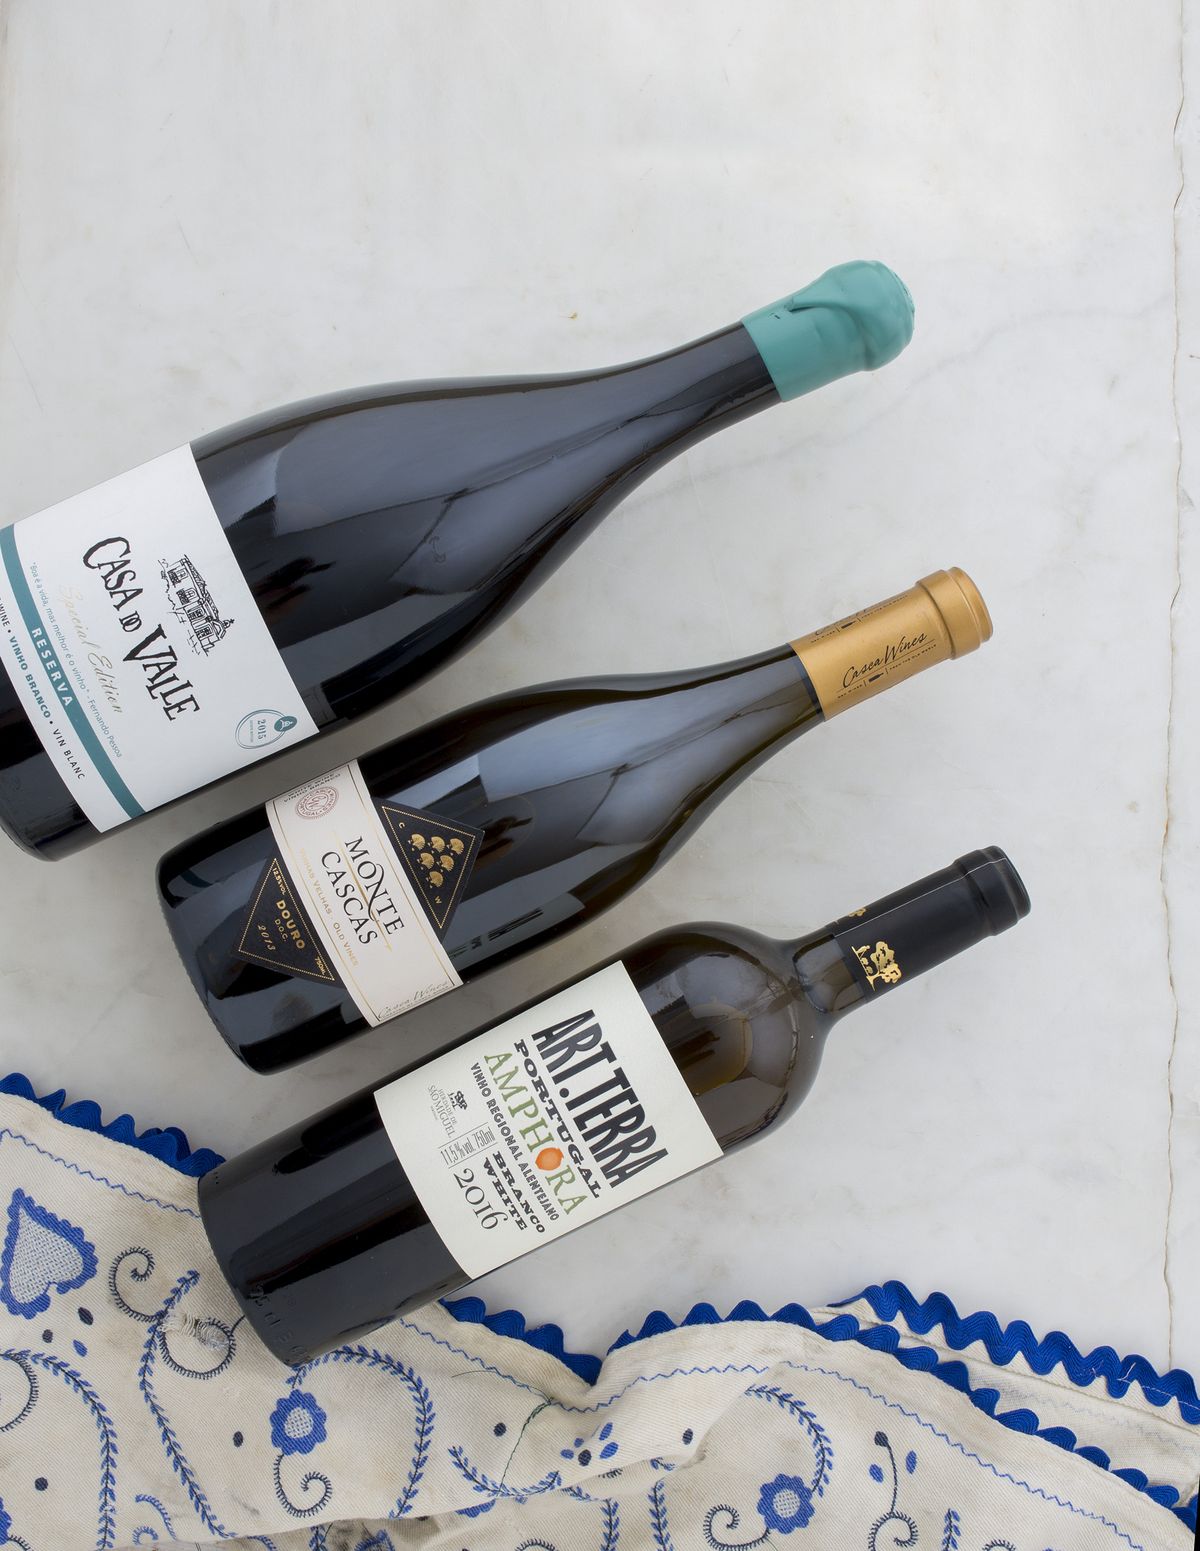 النبيذ الأبيض الخفيف من البرتغال.